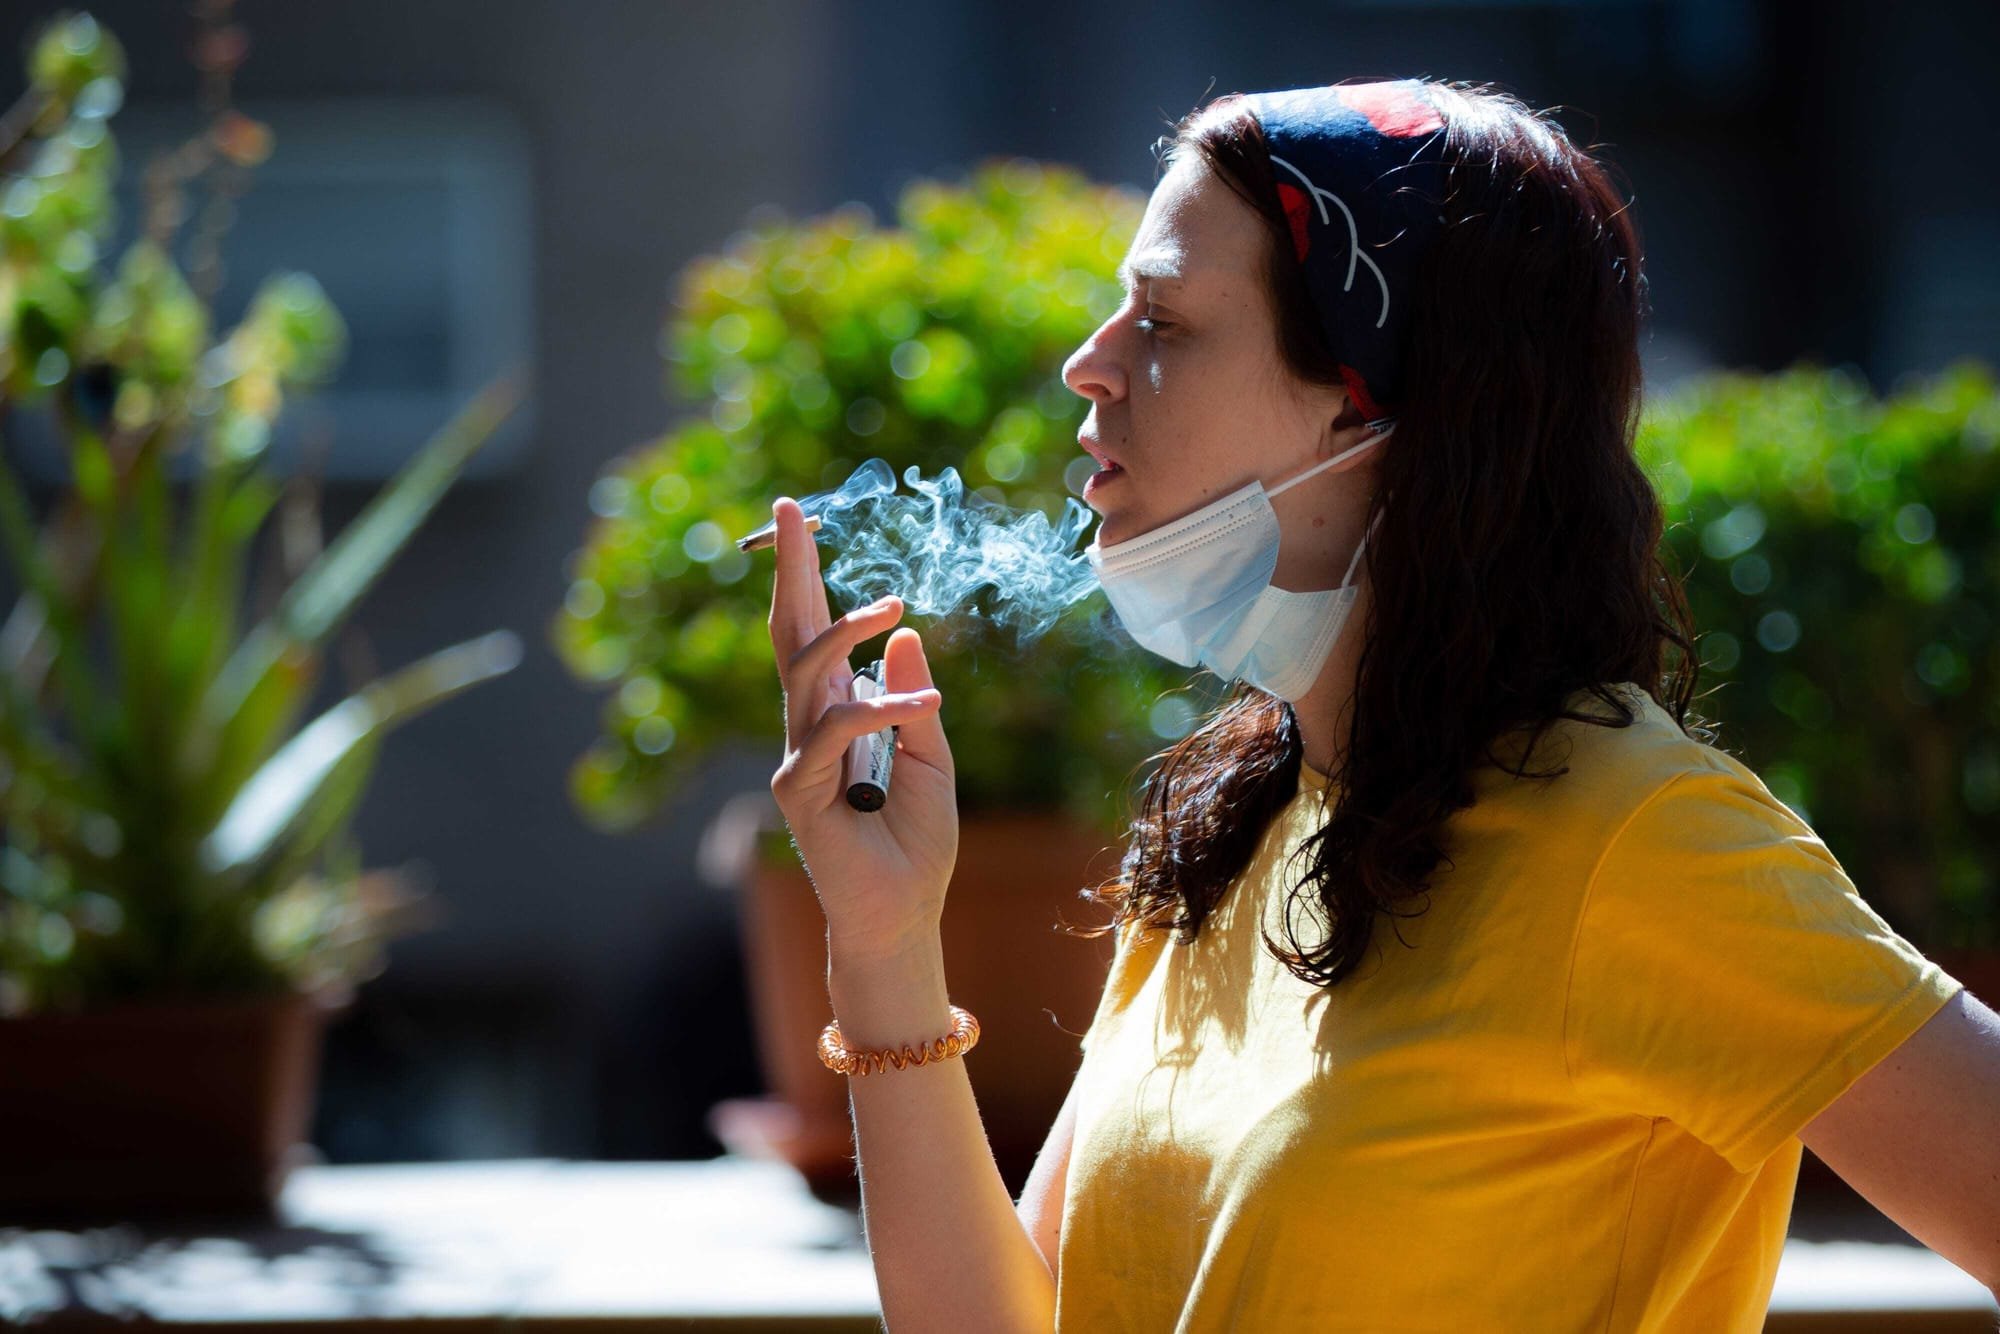 هل يقلل التدخين من تأثير وفاعلية لقاح فيروس كورونا؟